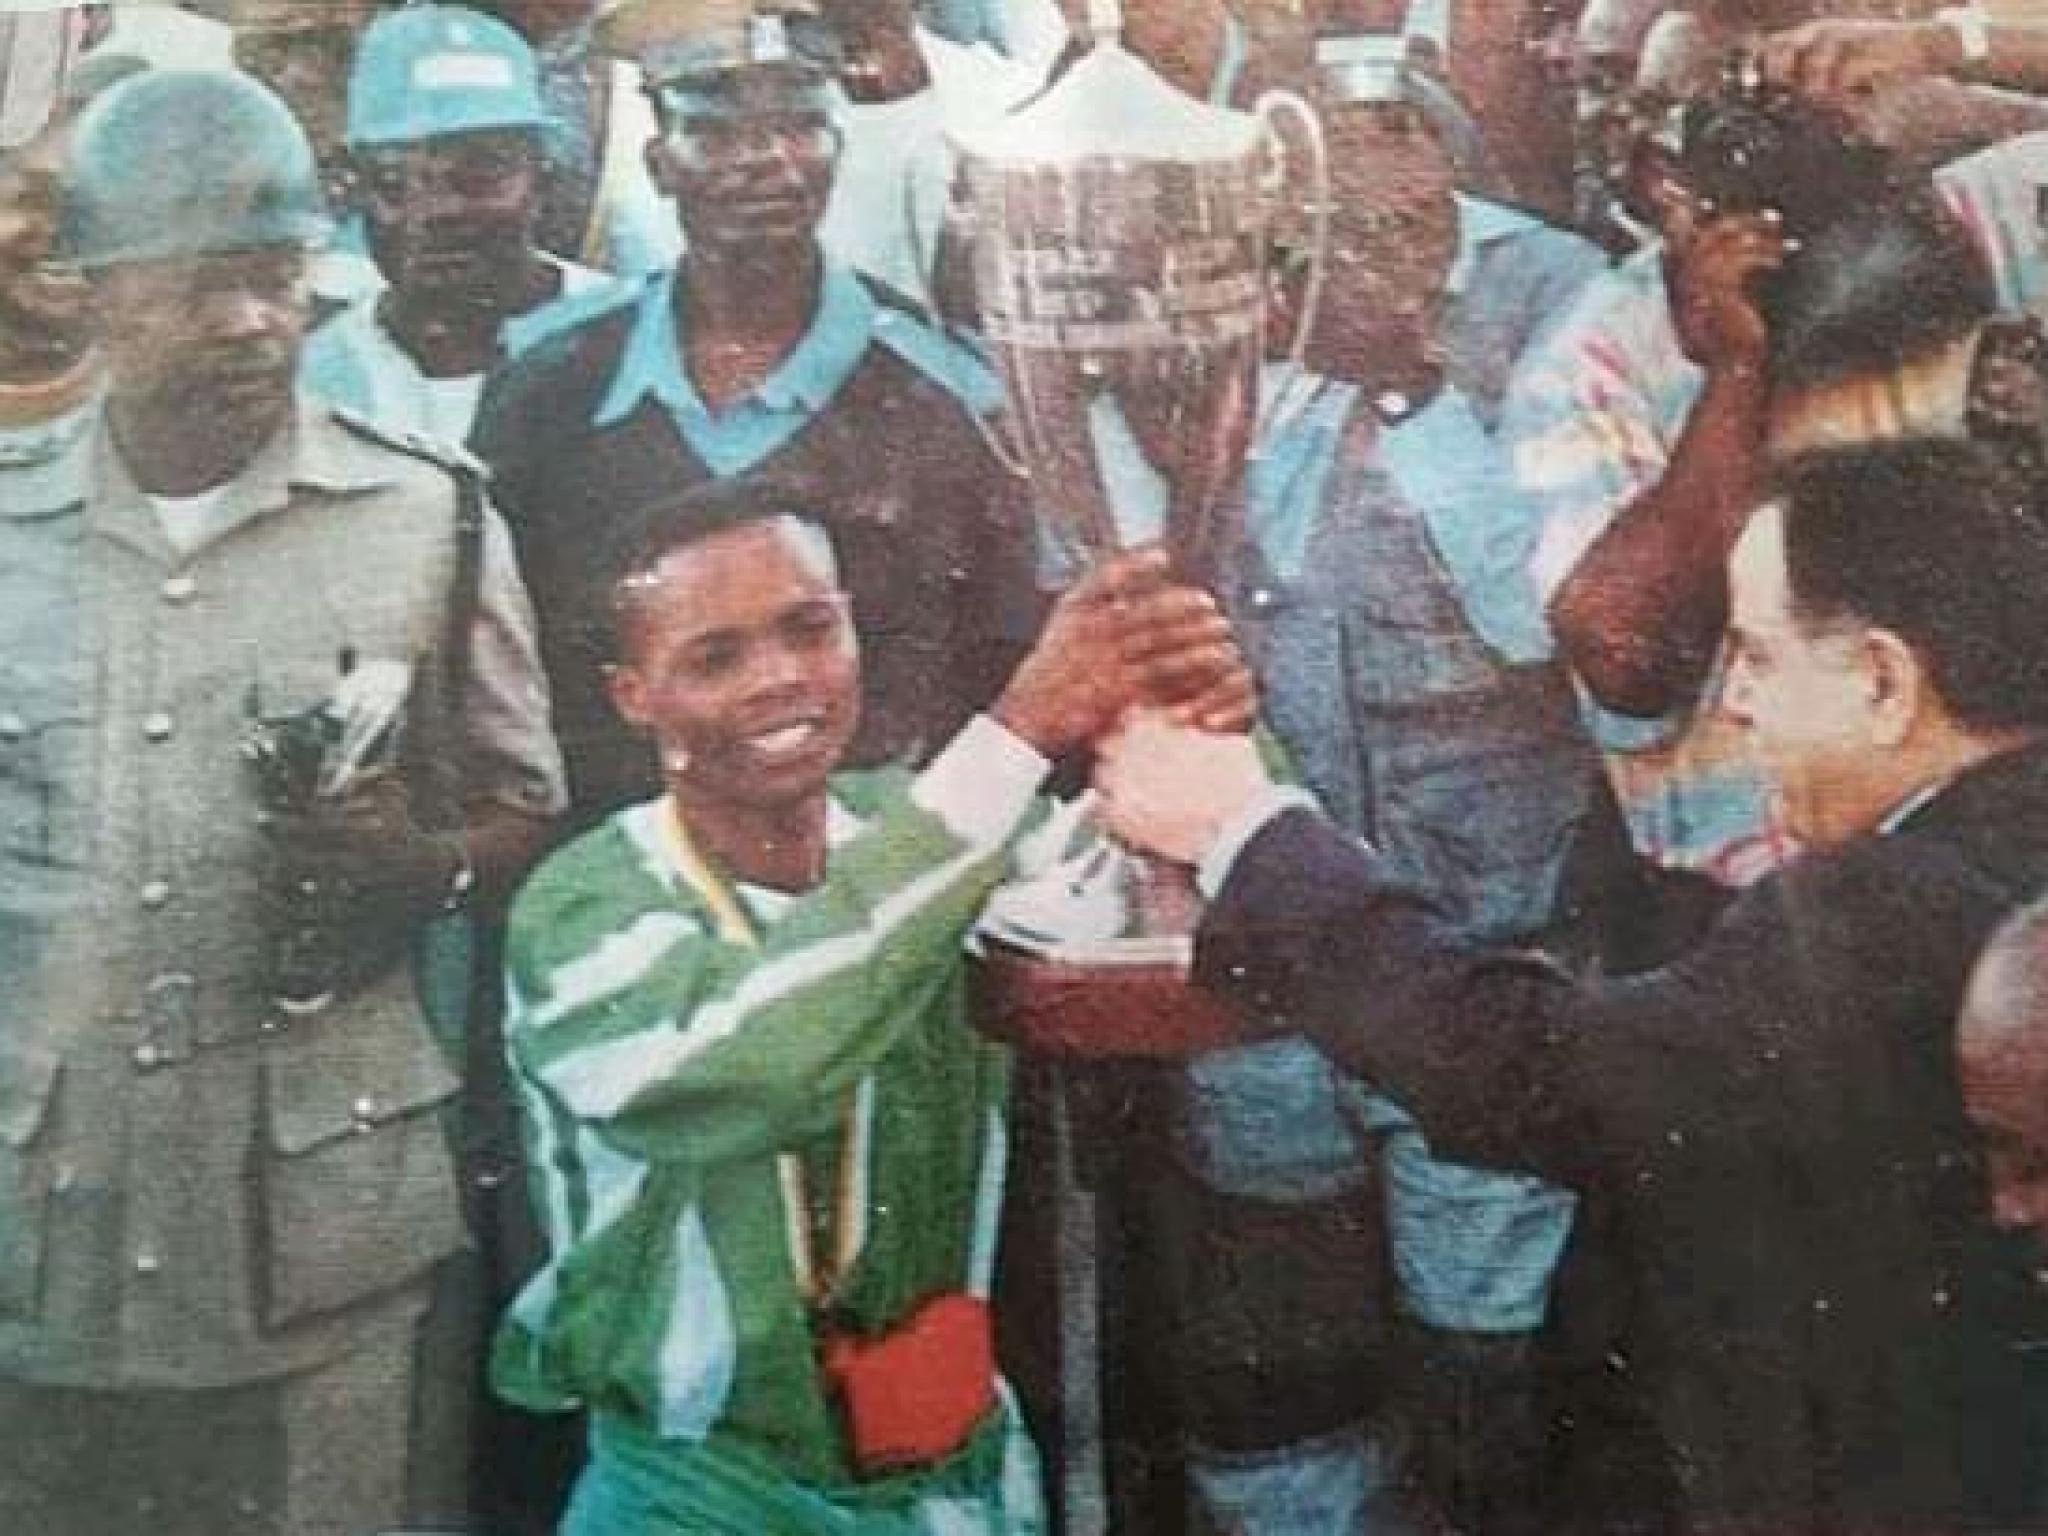 La victoire de Motema pembe en coupe des vainqueurs des coupes en 1994